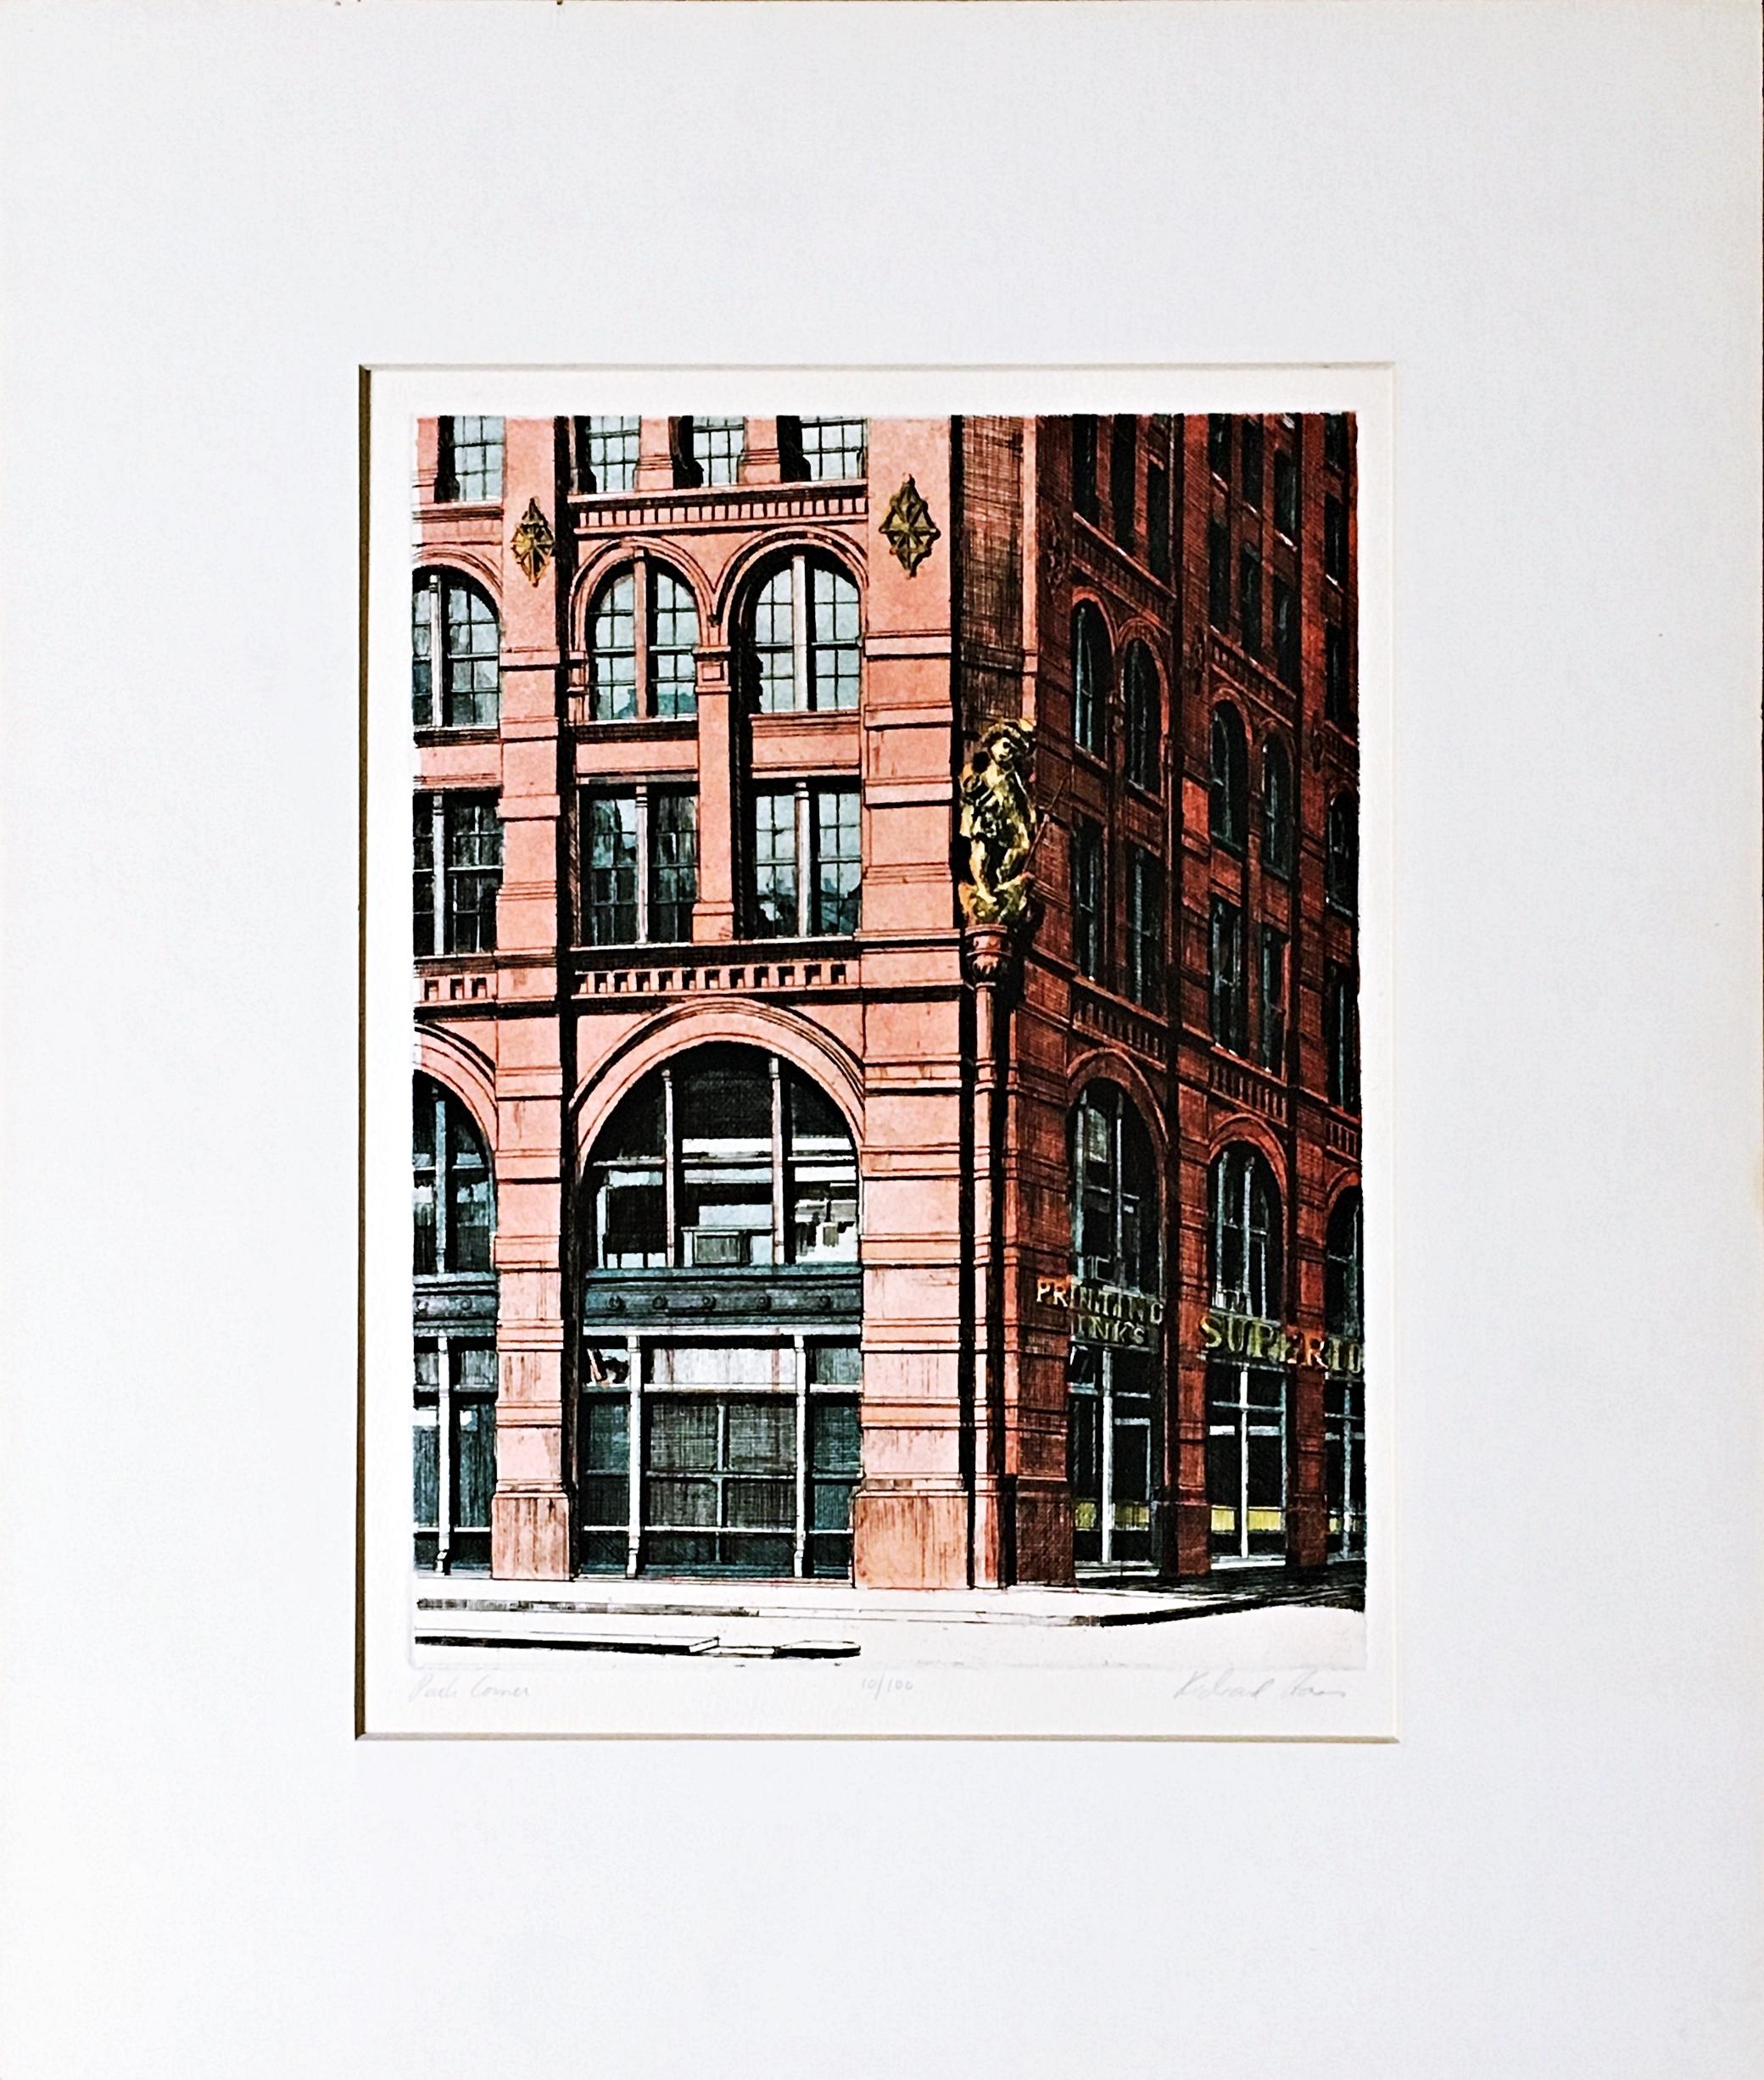 Puck Corner, SOHO, New York, signé et numéroté 10/100 par le plus grand artiste architecte - Print de Richard Haas